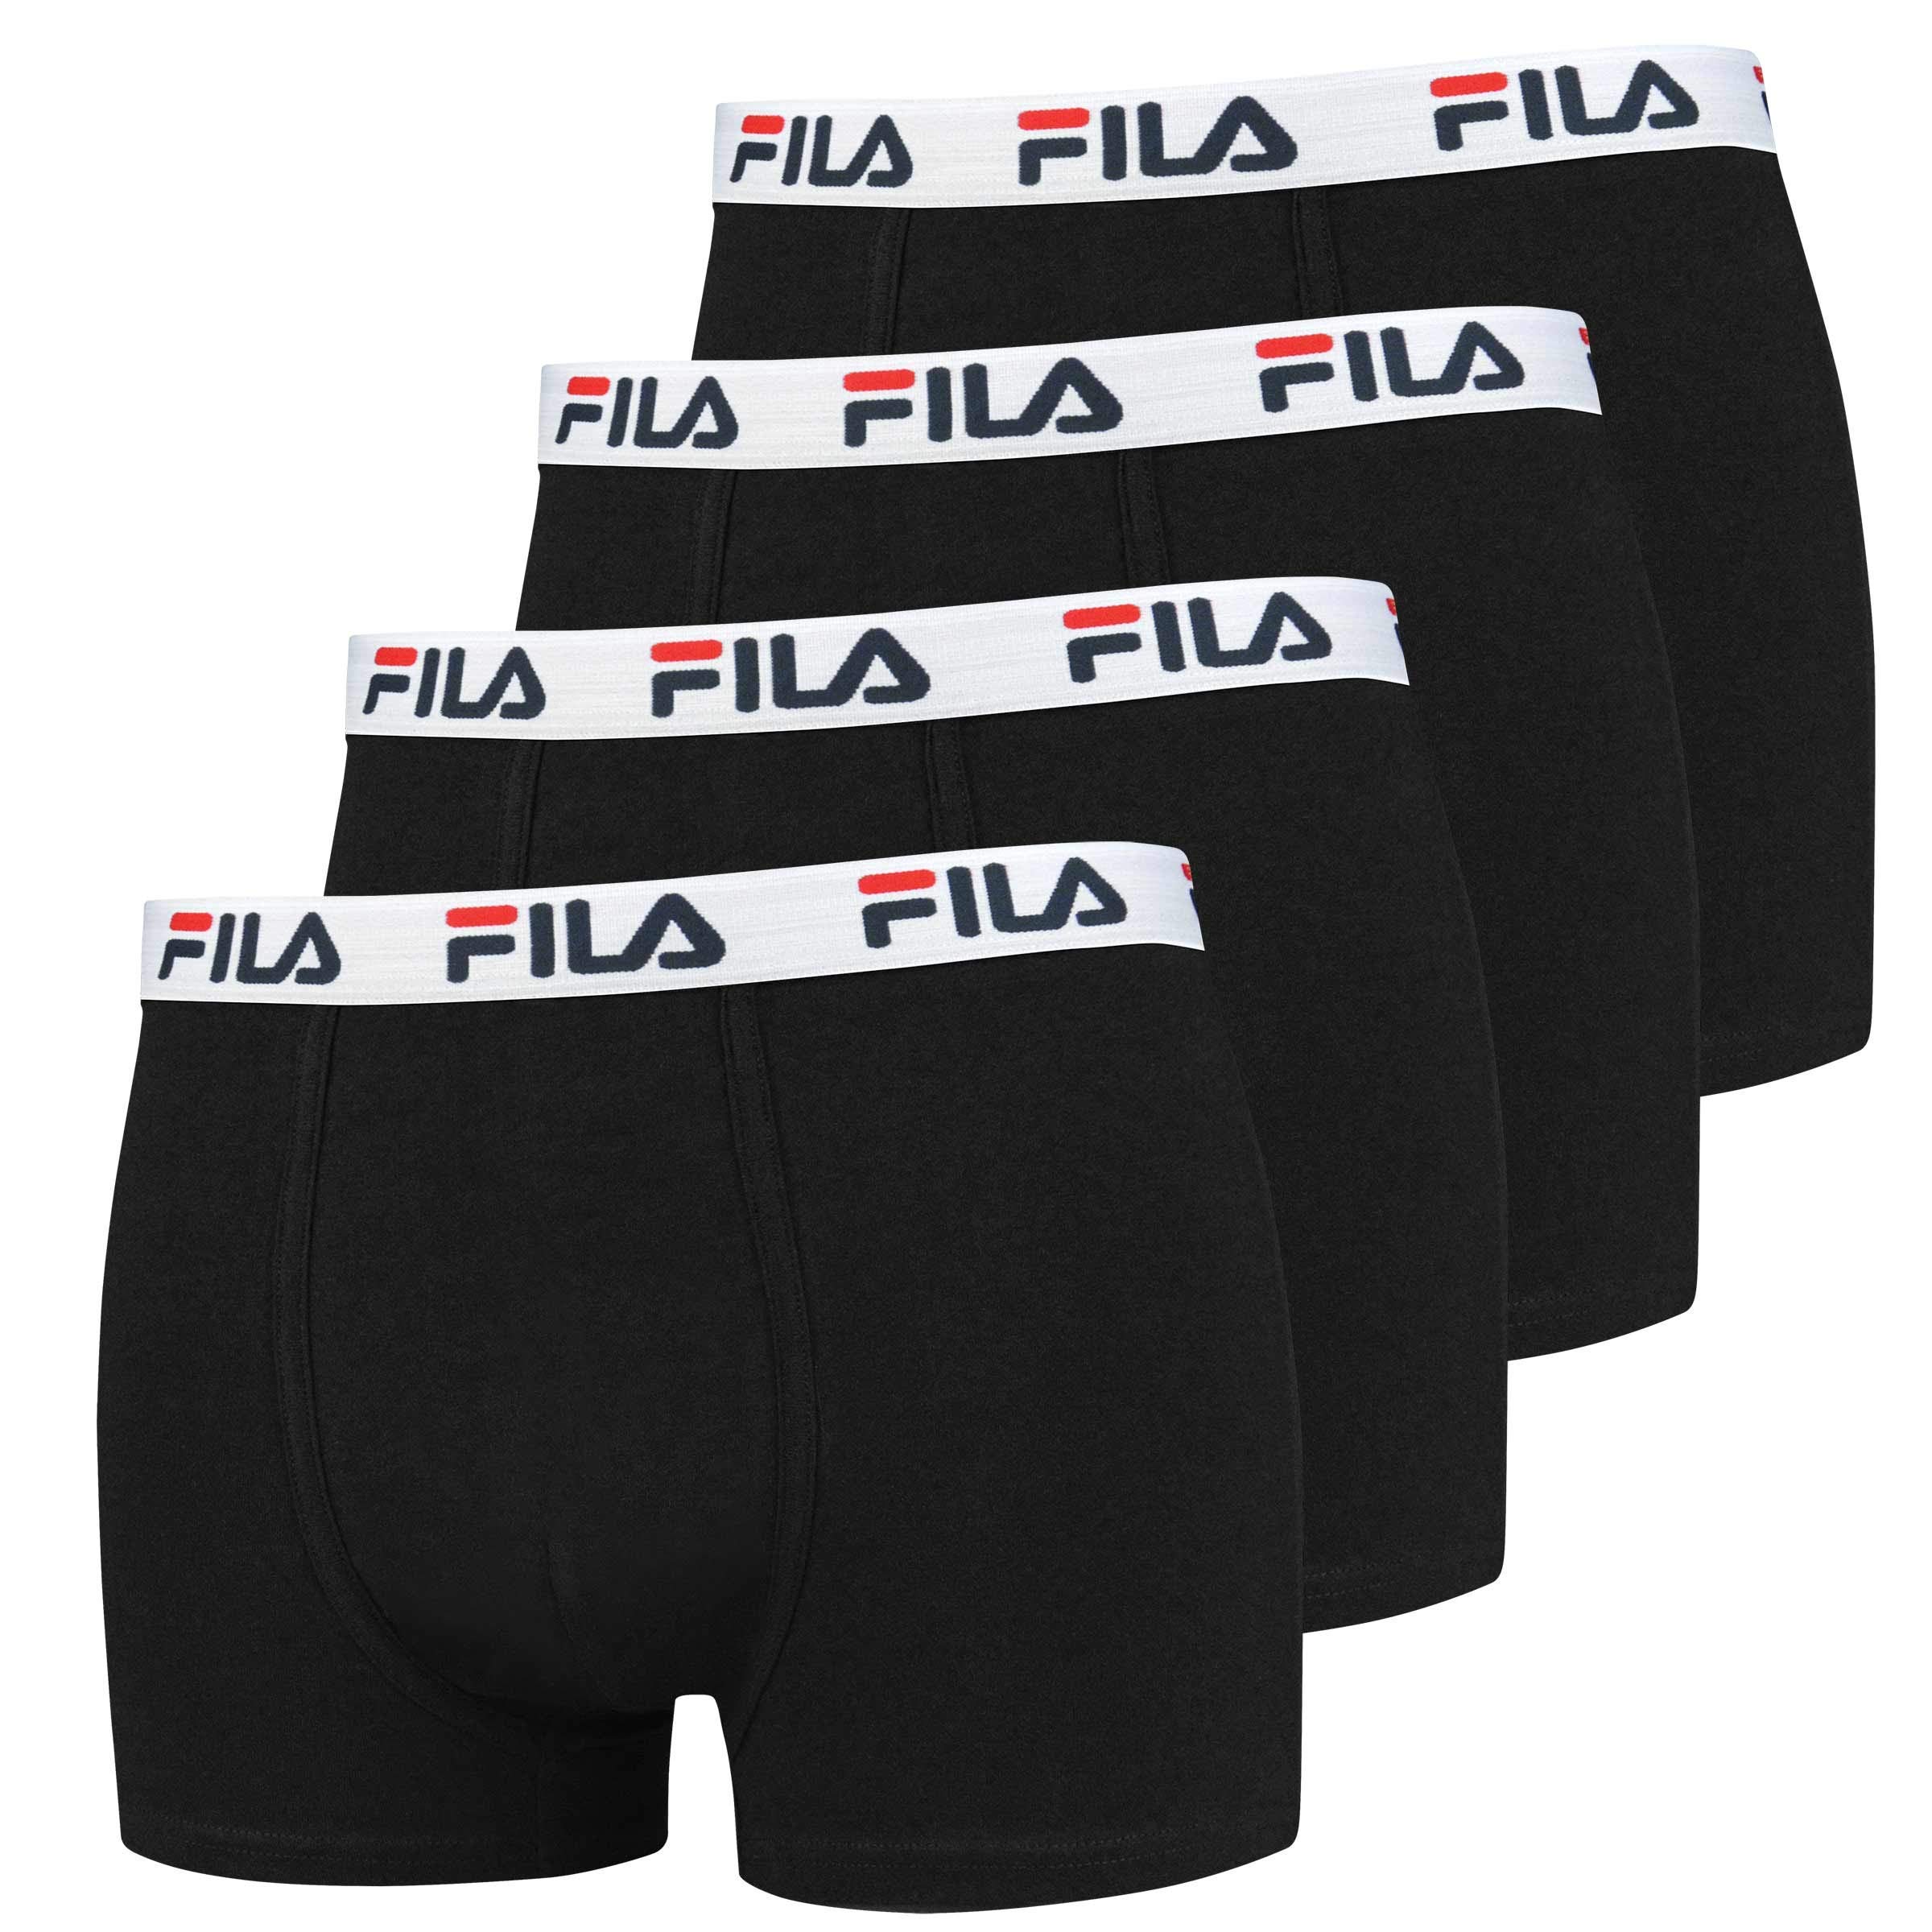 FILA 4er Vorteilspack Herren Boxershorts - Logo Pants - Einfarbig - viele Farben (Schwarz, M - 4er Pack)